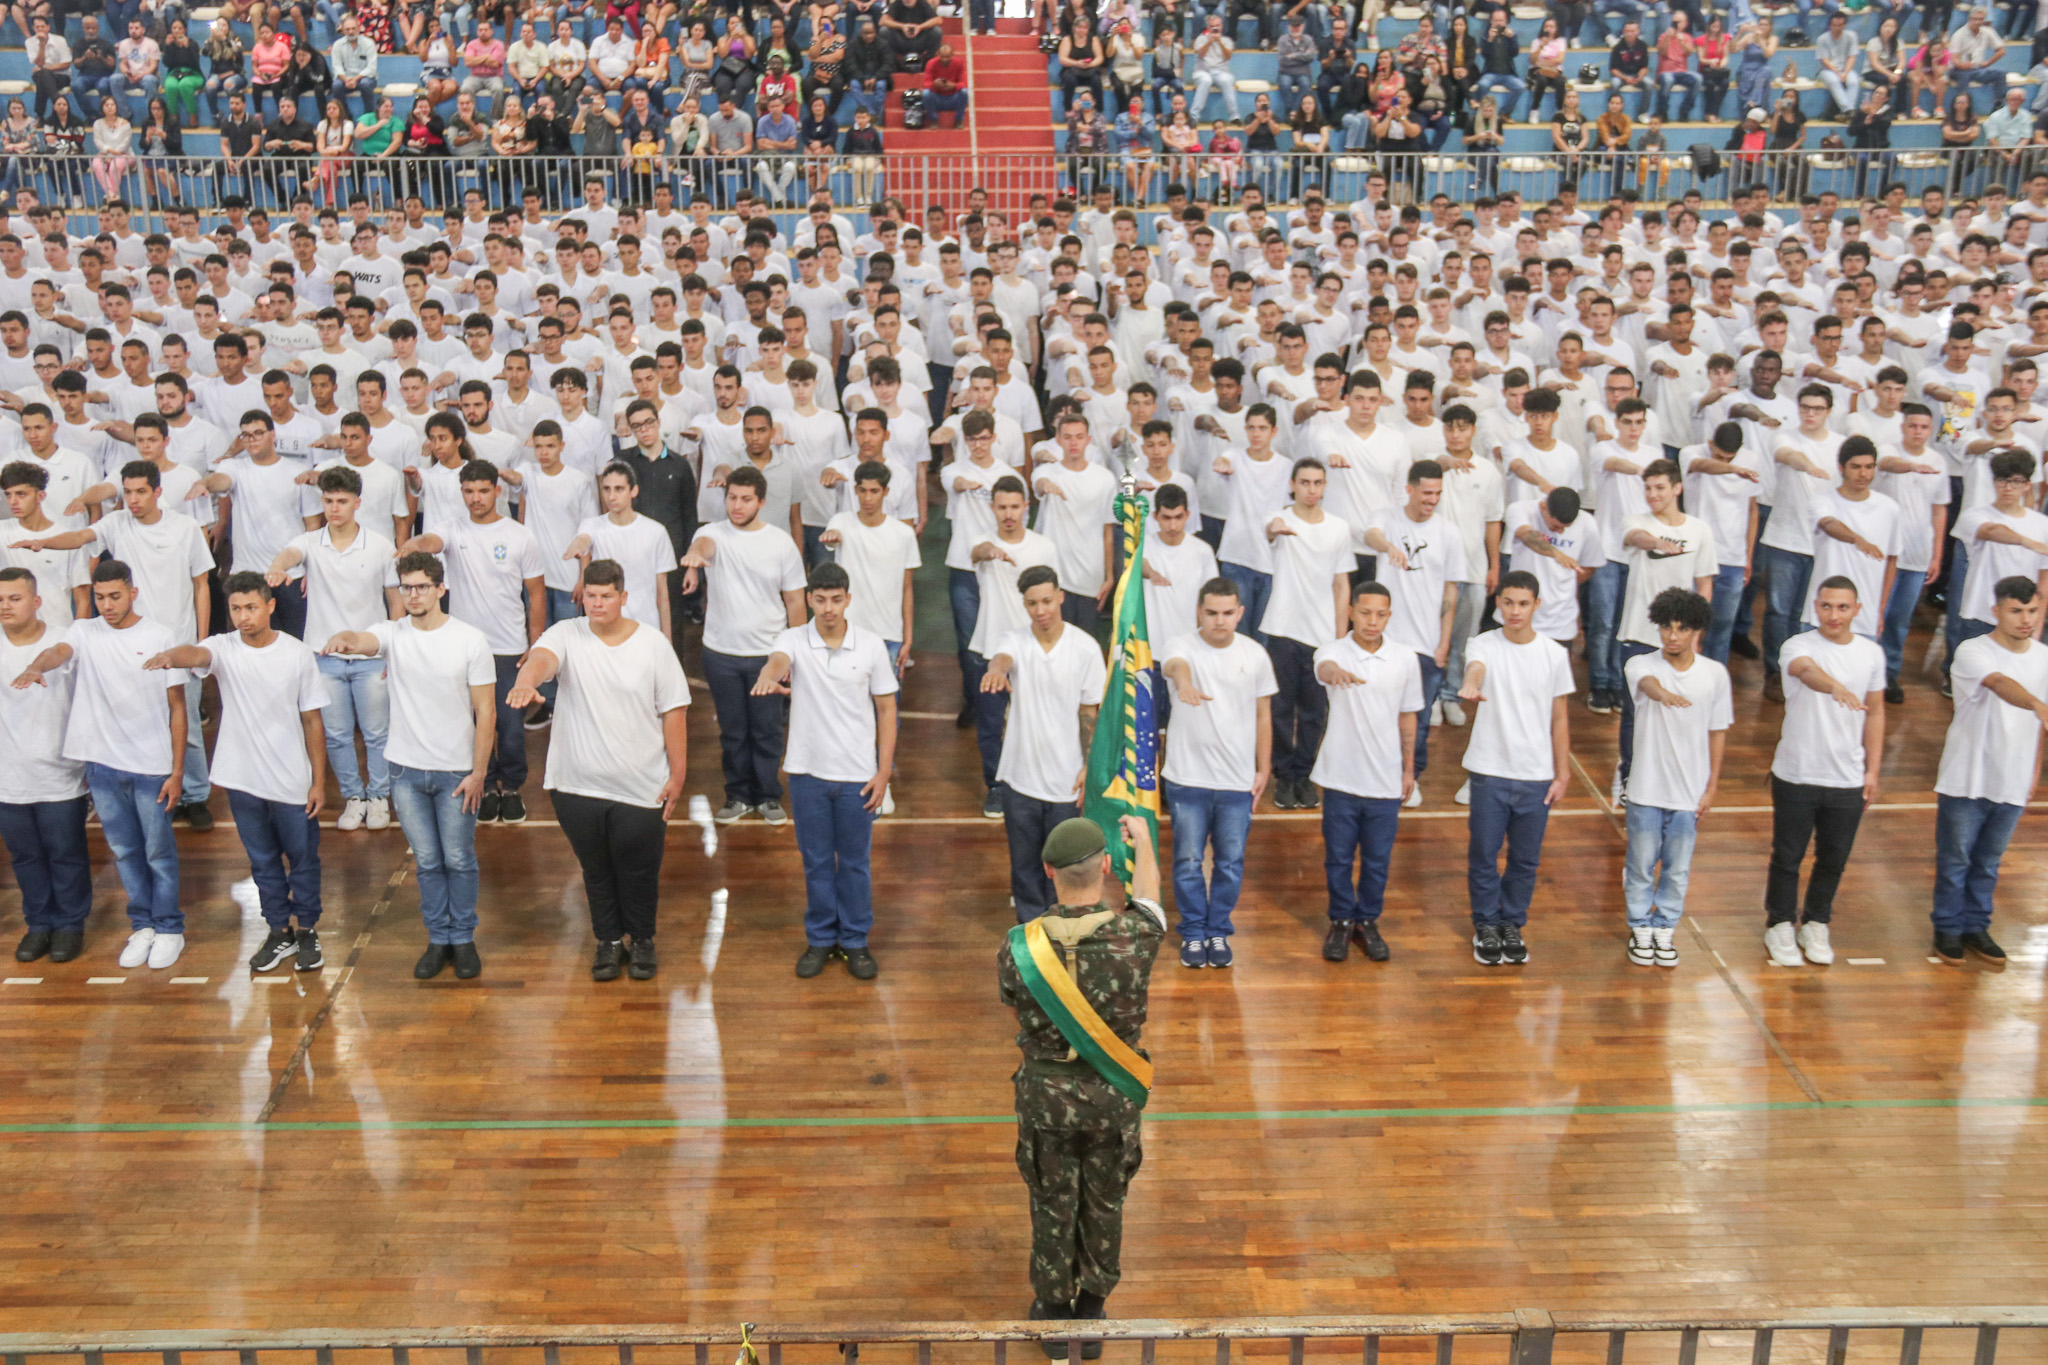 Solenidade de Juramento à Bandeira reúne mais de 700 jovens alistados e dispensados do serviço militar